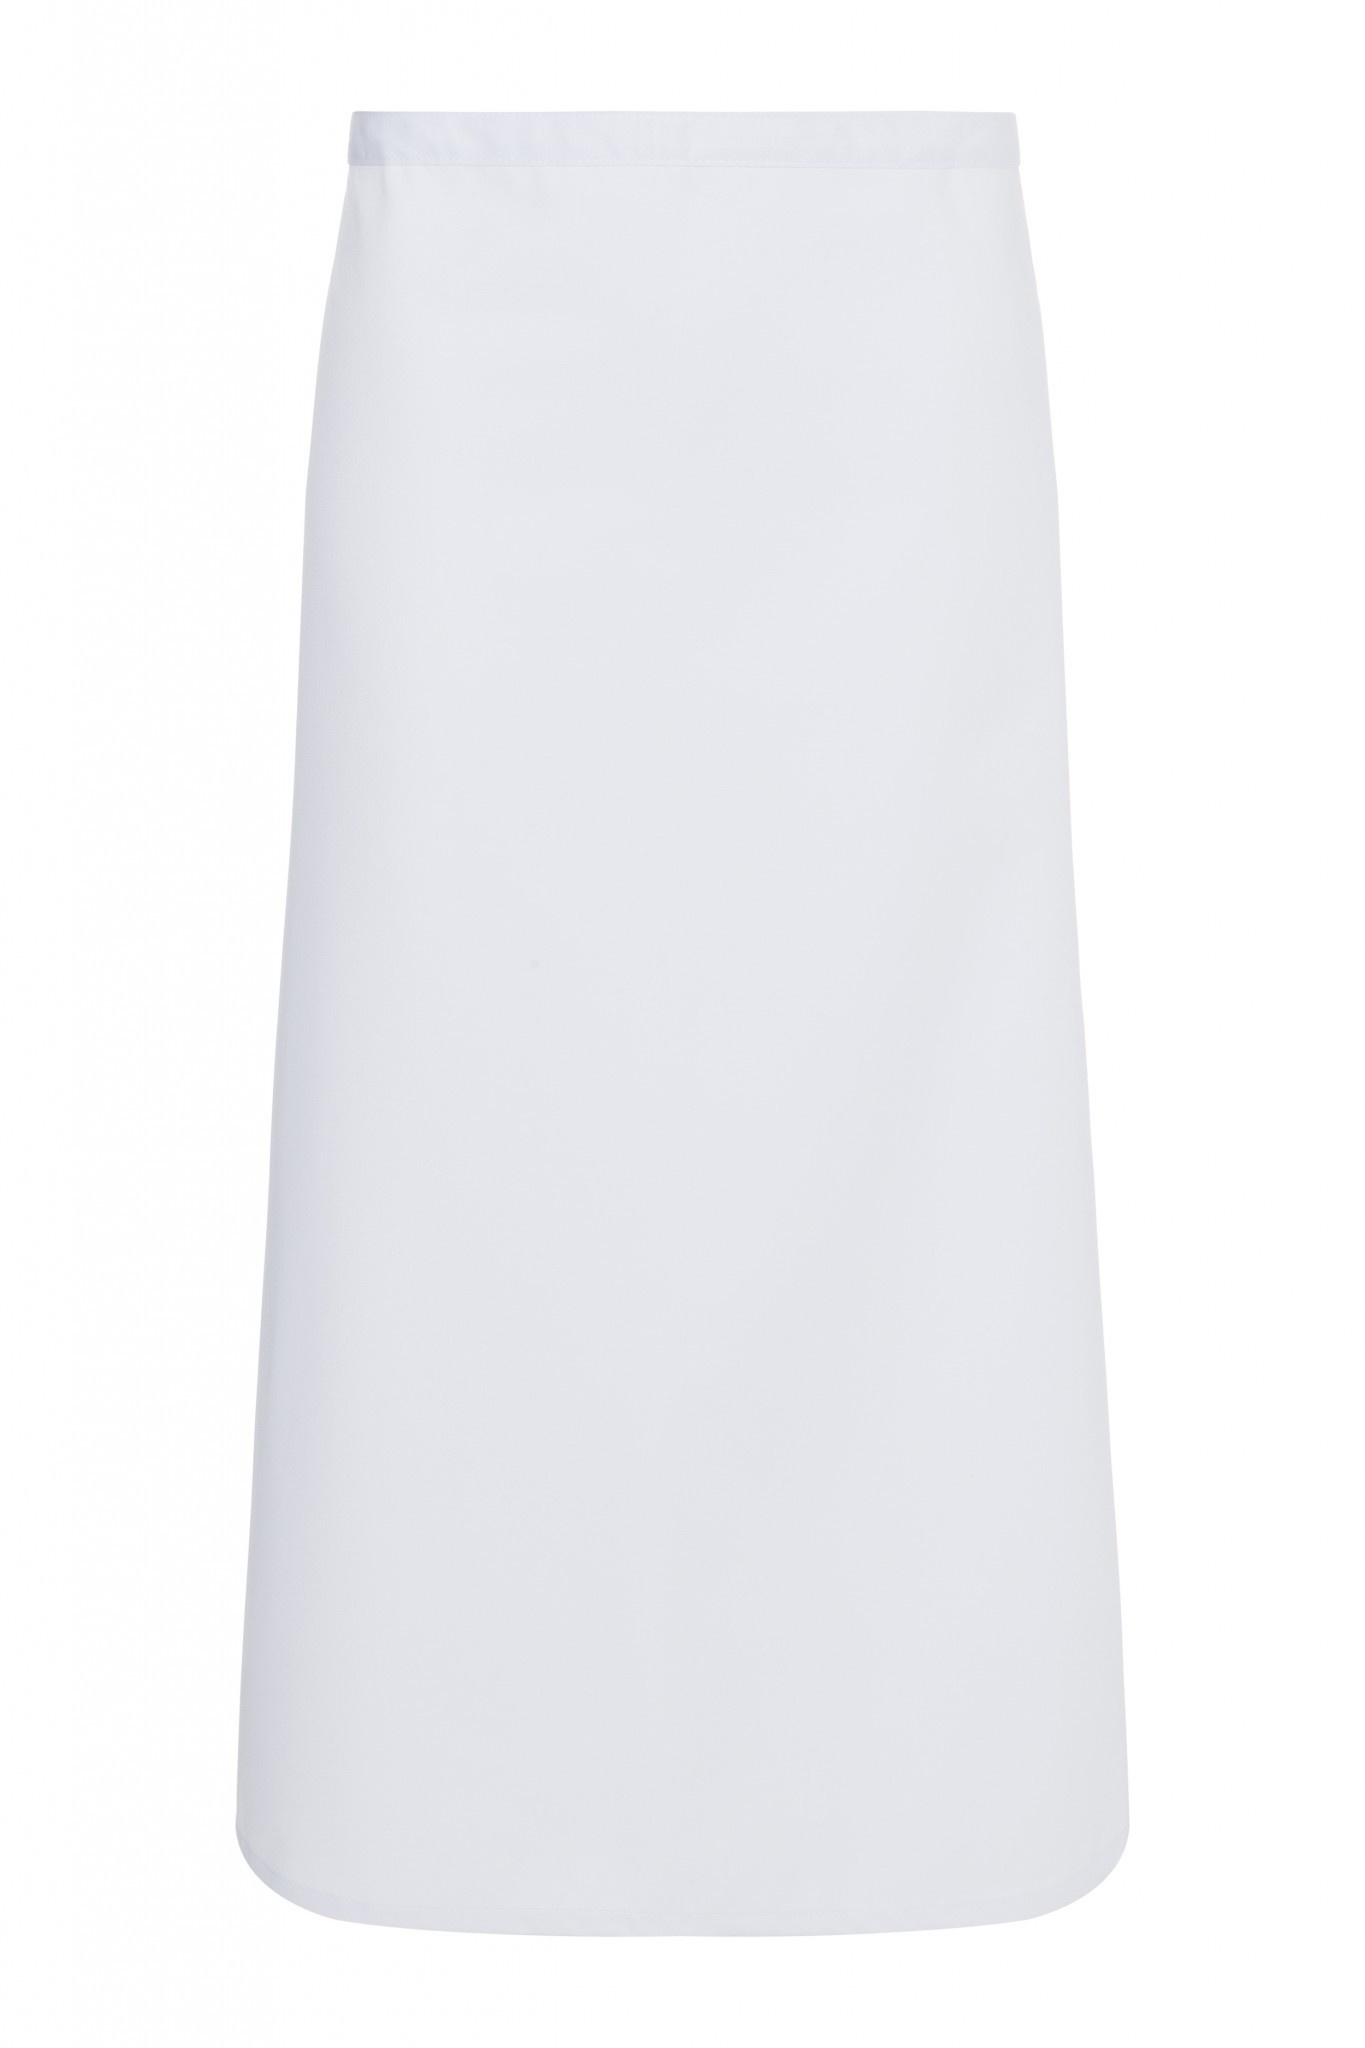 Bistroschürze Ibiza | 110x90 cm | 65% Polyester / 35% Baumwolle | Erhältlich in 18 Farben